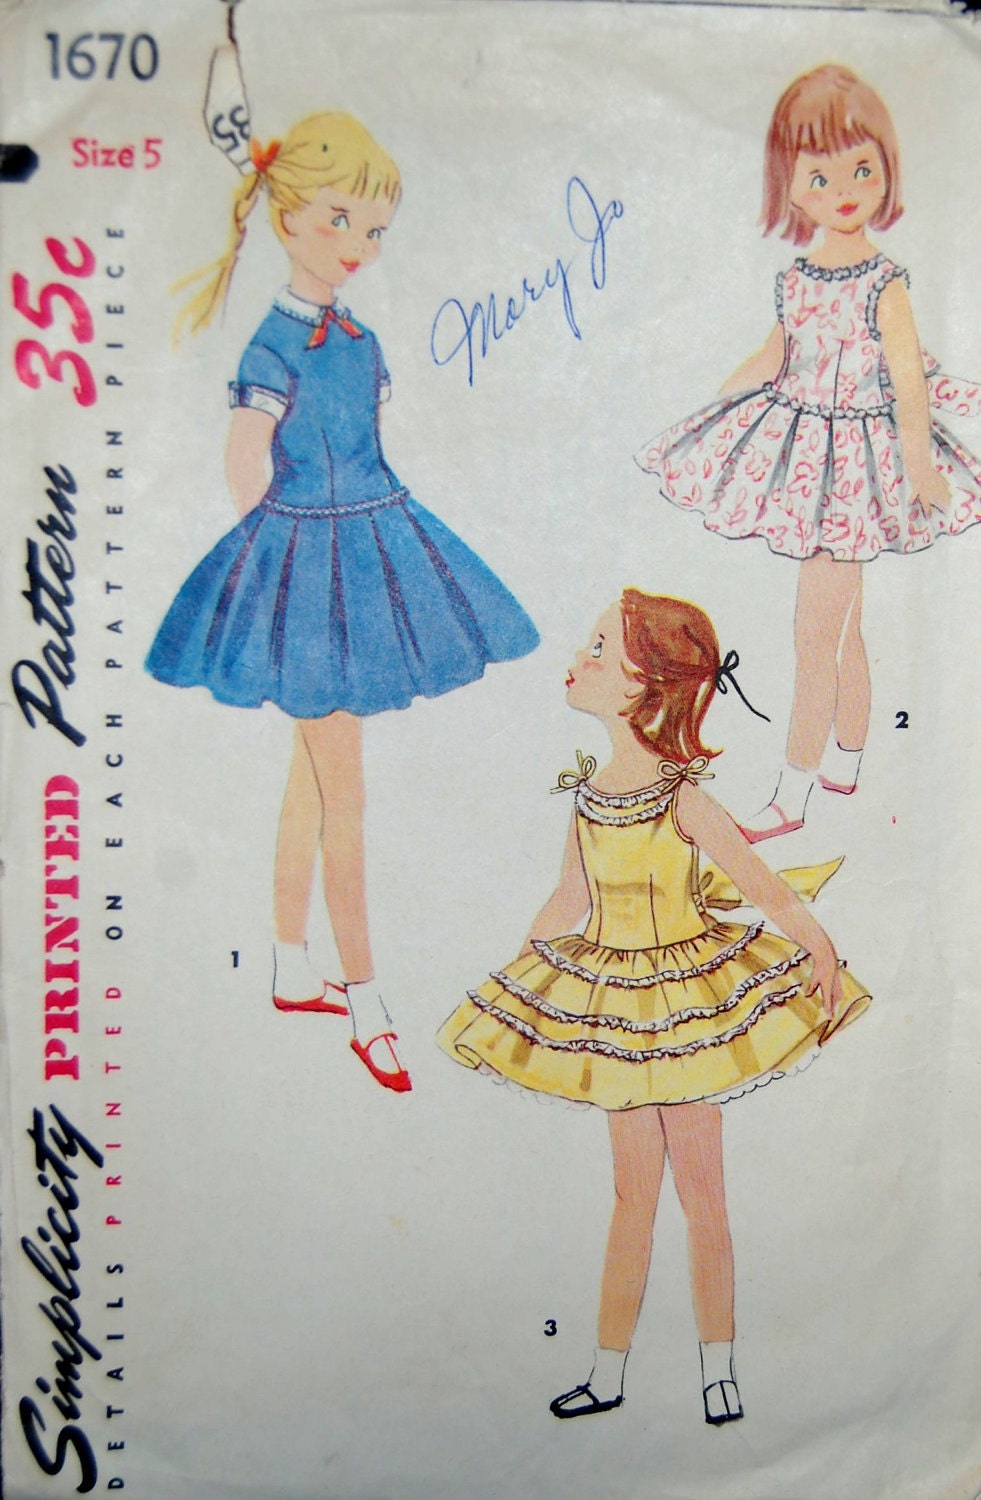 Vintage 1950s Simplicity Girls Dress Pattern 1670 Size 5 23